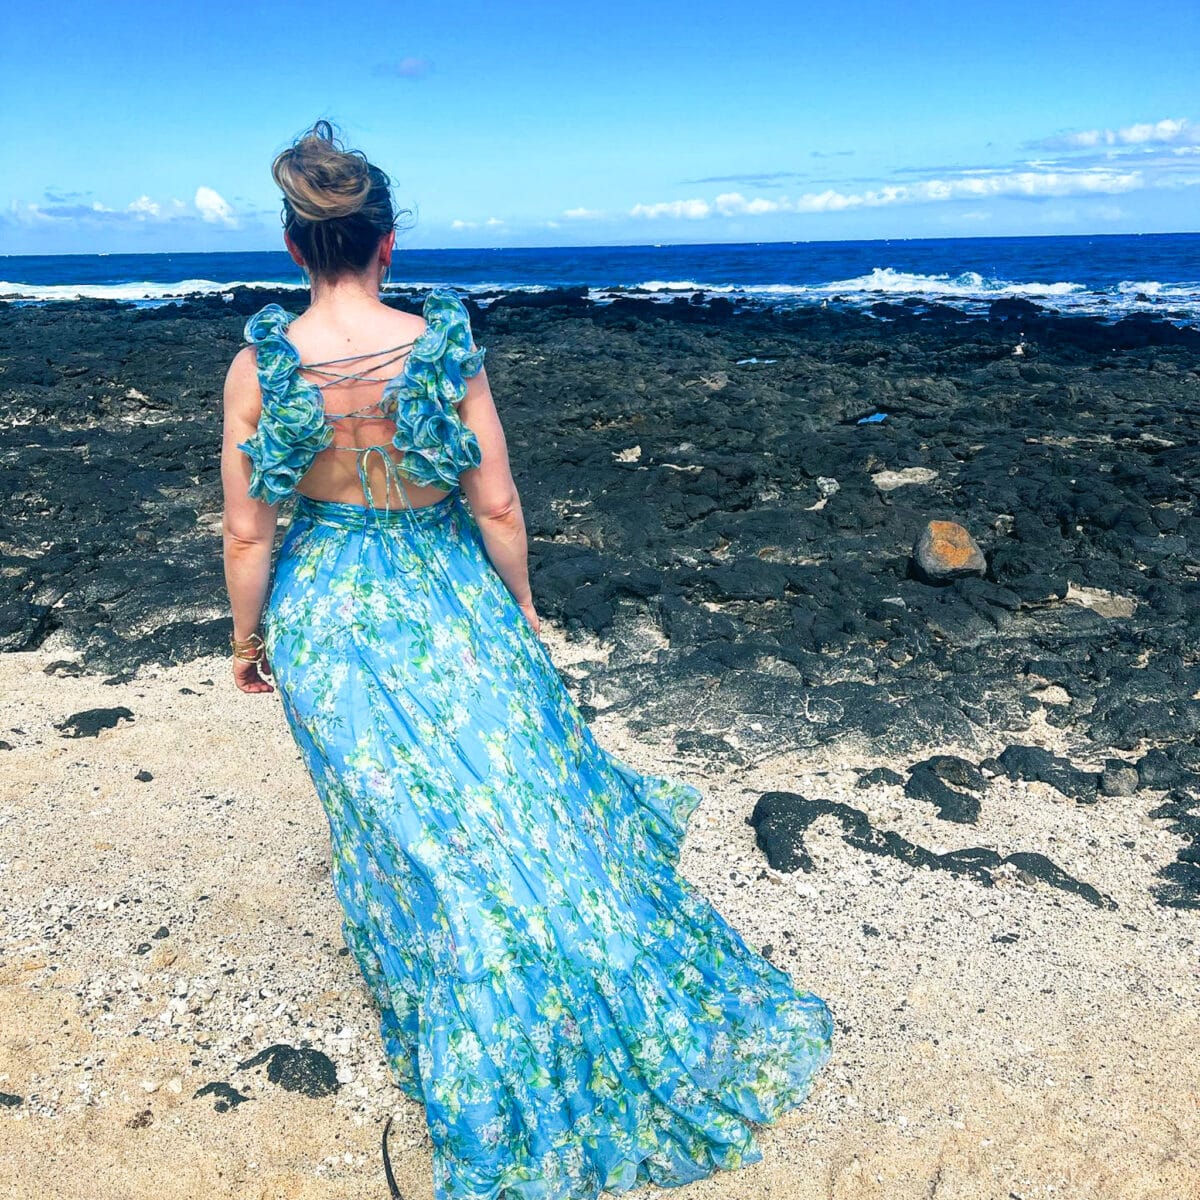 jillian travel and wellness influencer and blogger at Sandy Beach, Hawaii near Waikiki Beach